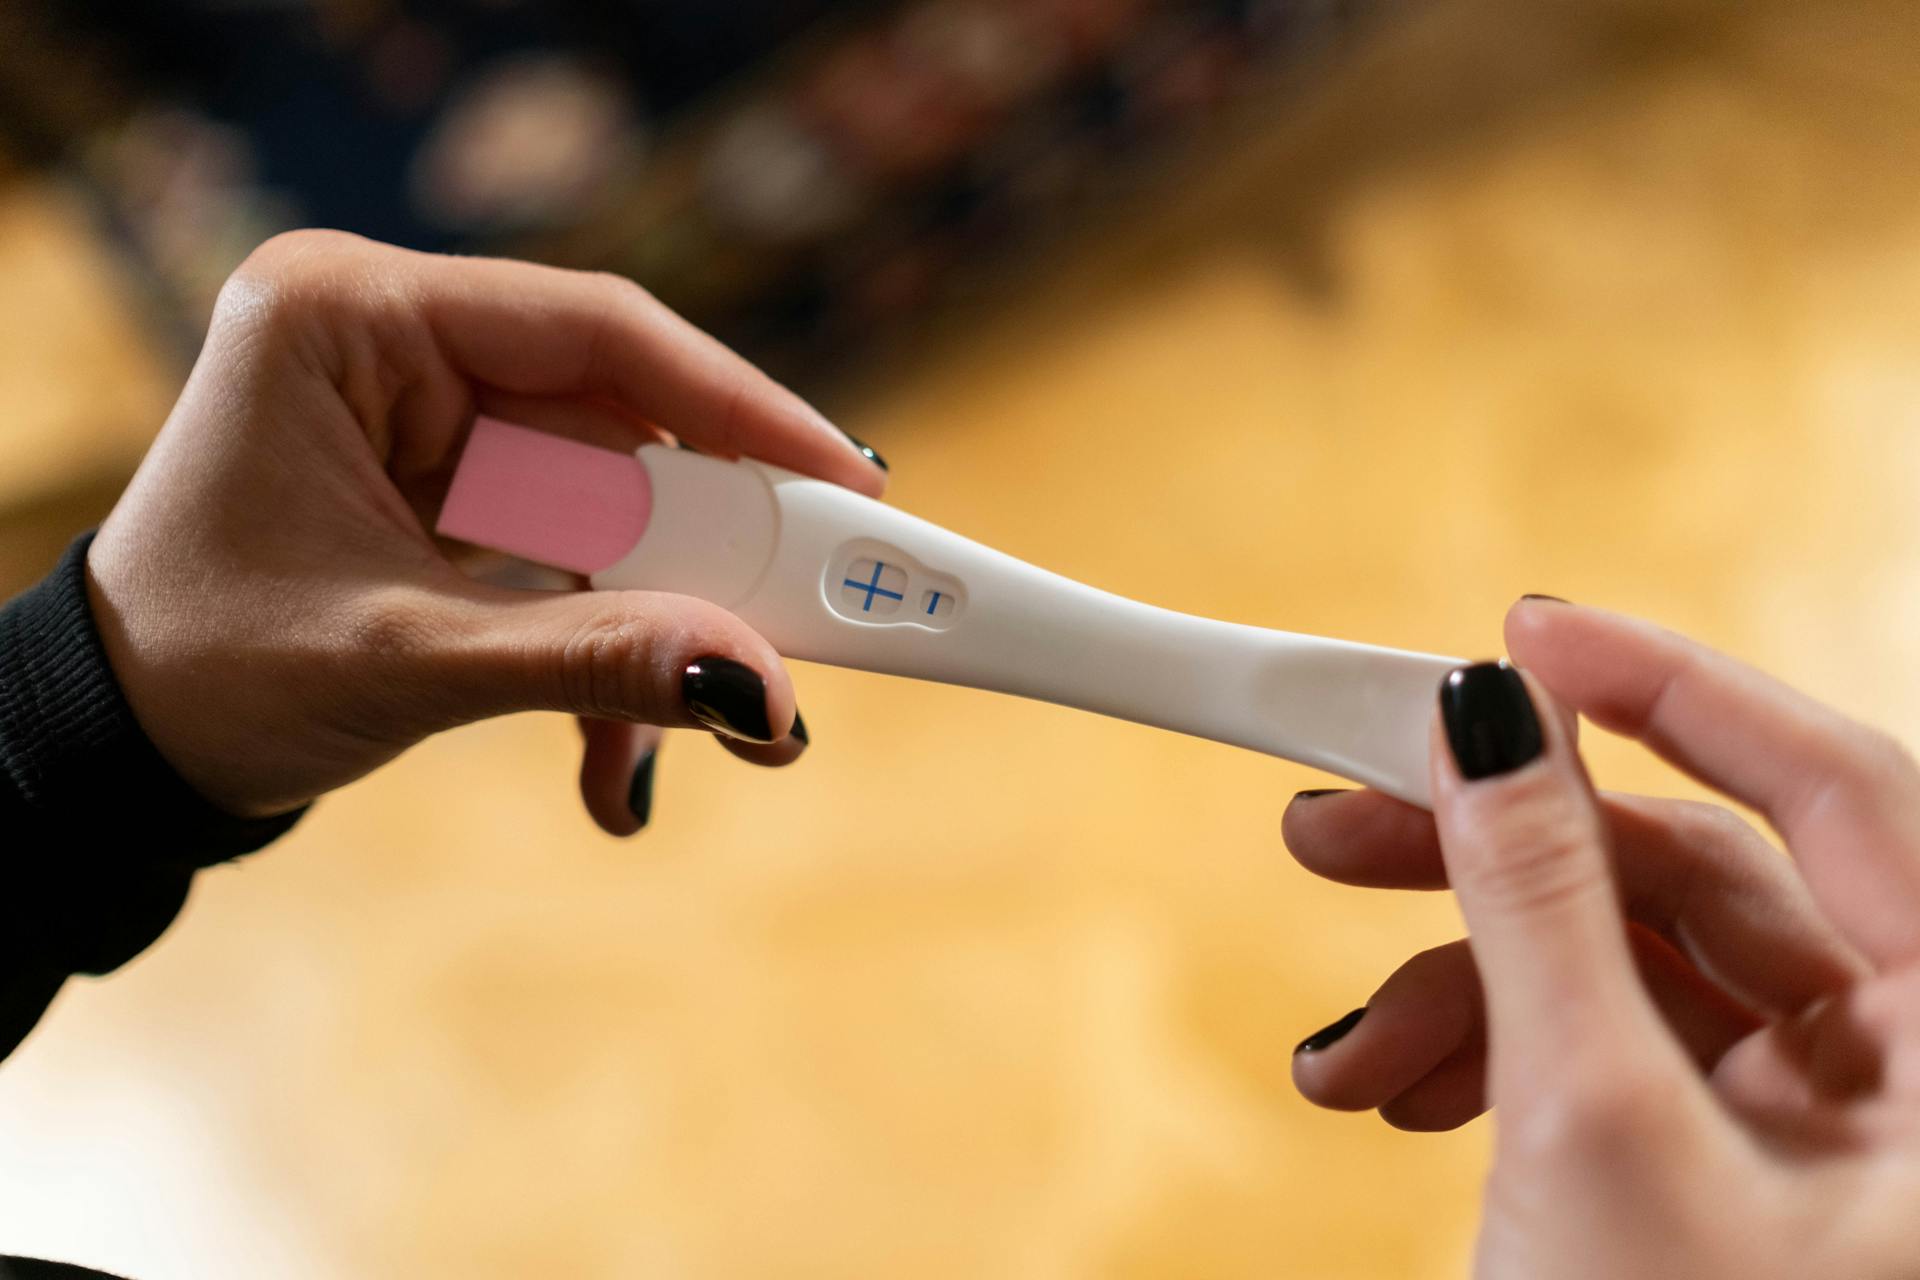 Une personne tenant un test de grossesse positif | Source : Pexels